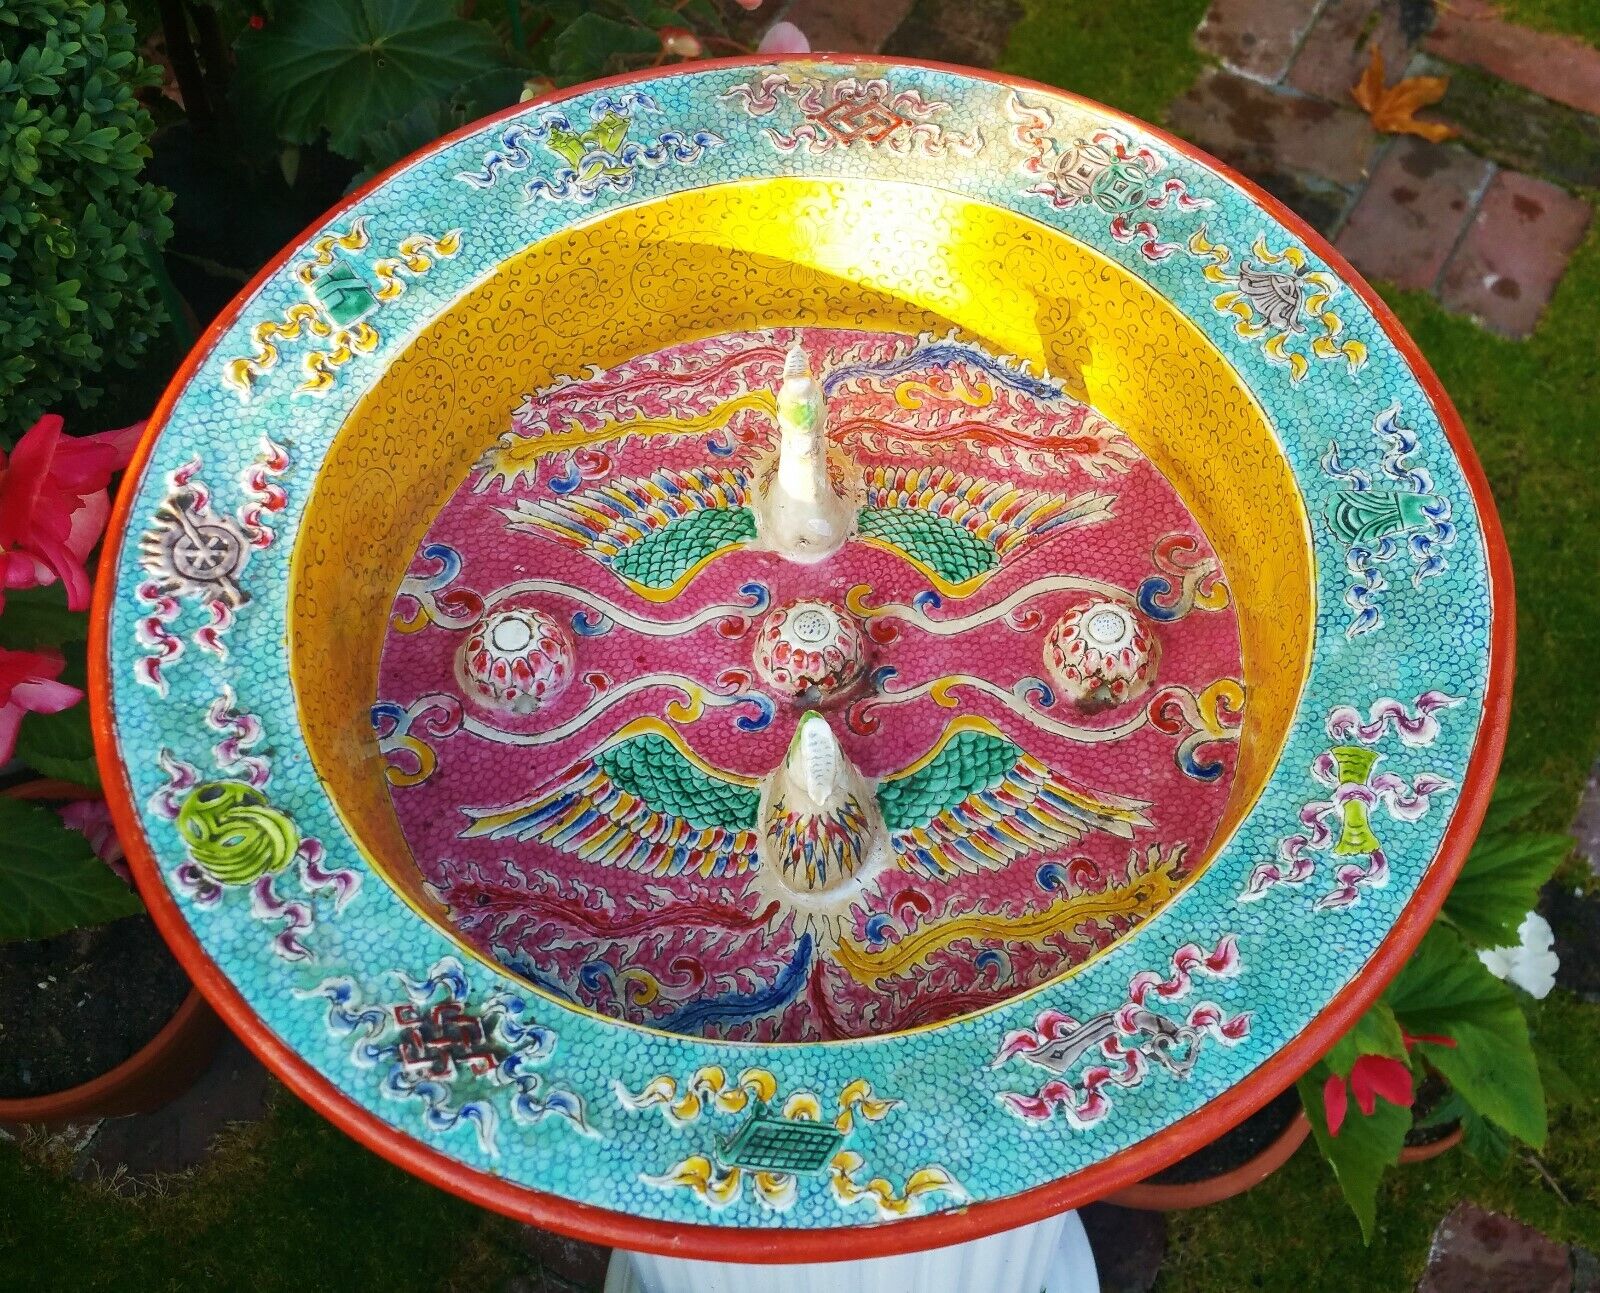 THE BABA NYONYA BASIN vtg chinese porcelain bowl peranakan straits pottery bird